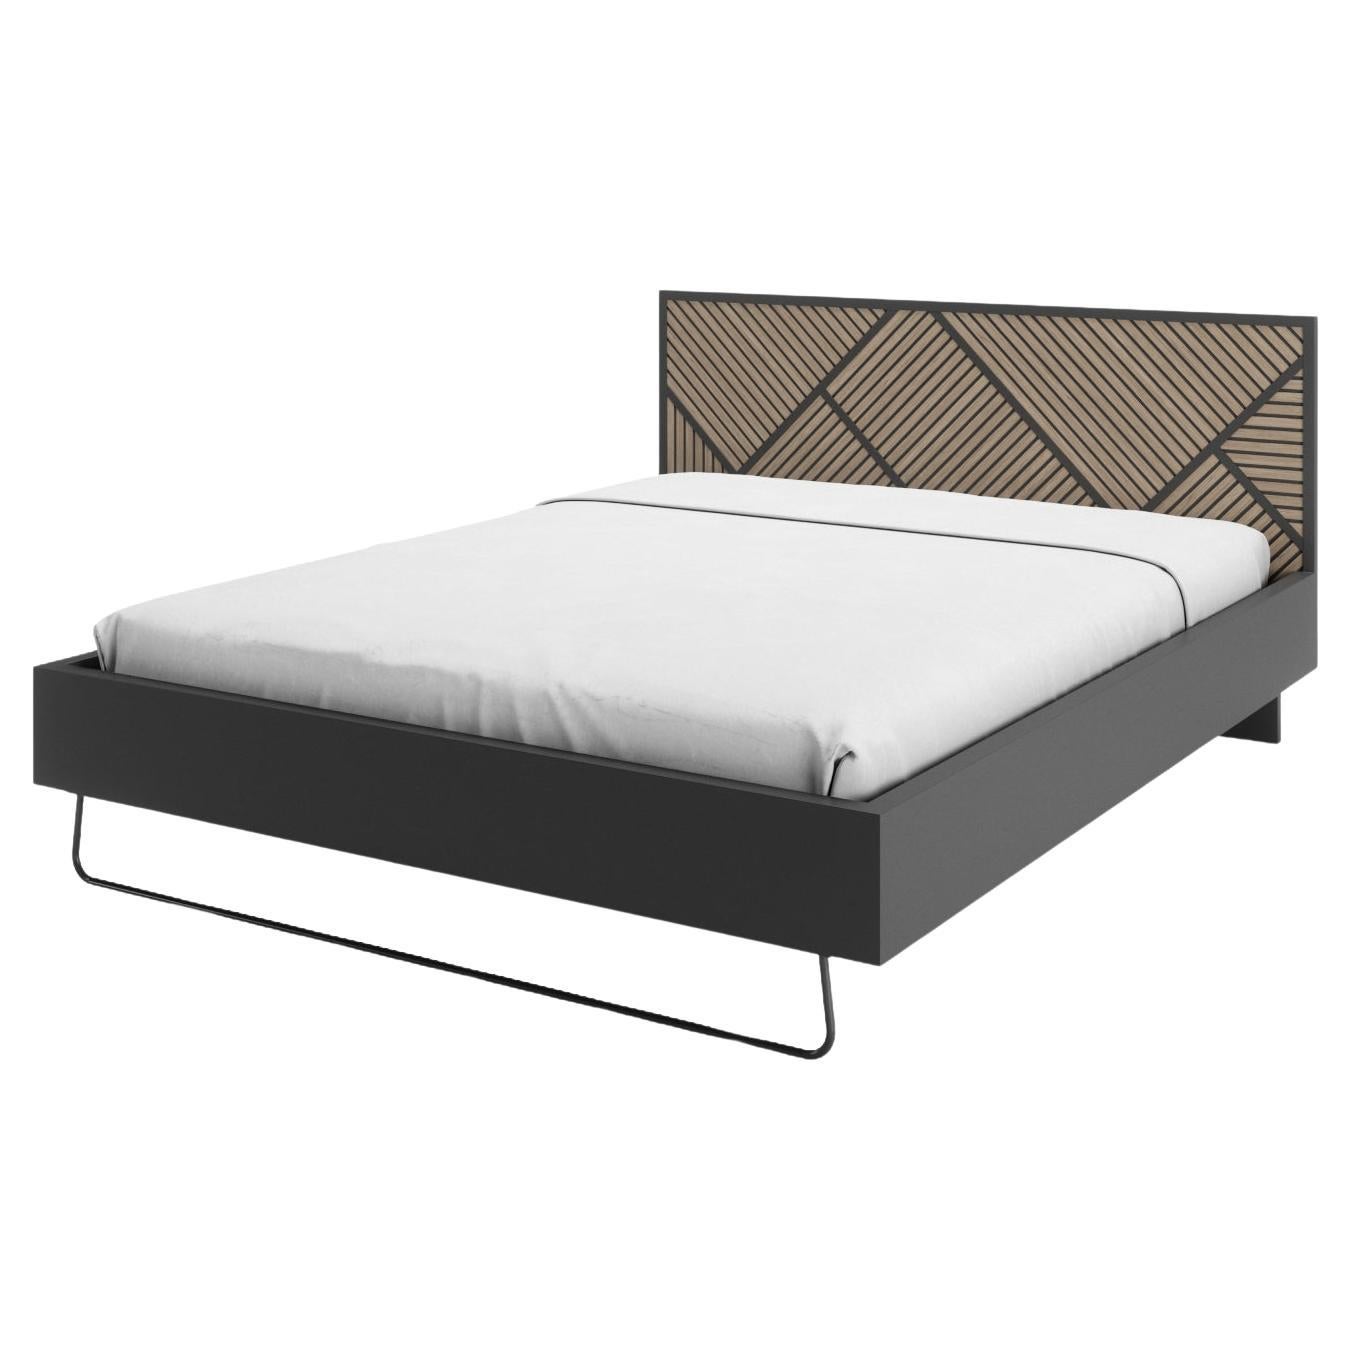 Slide-Bett mit Metallfuß für Marttresse